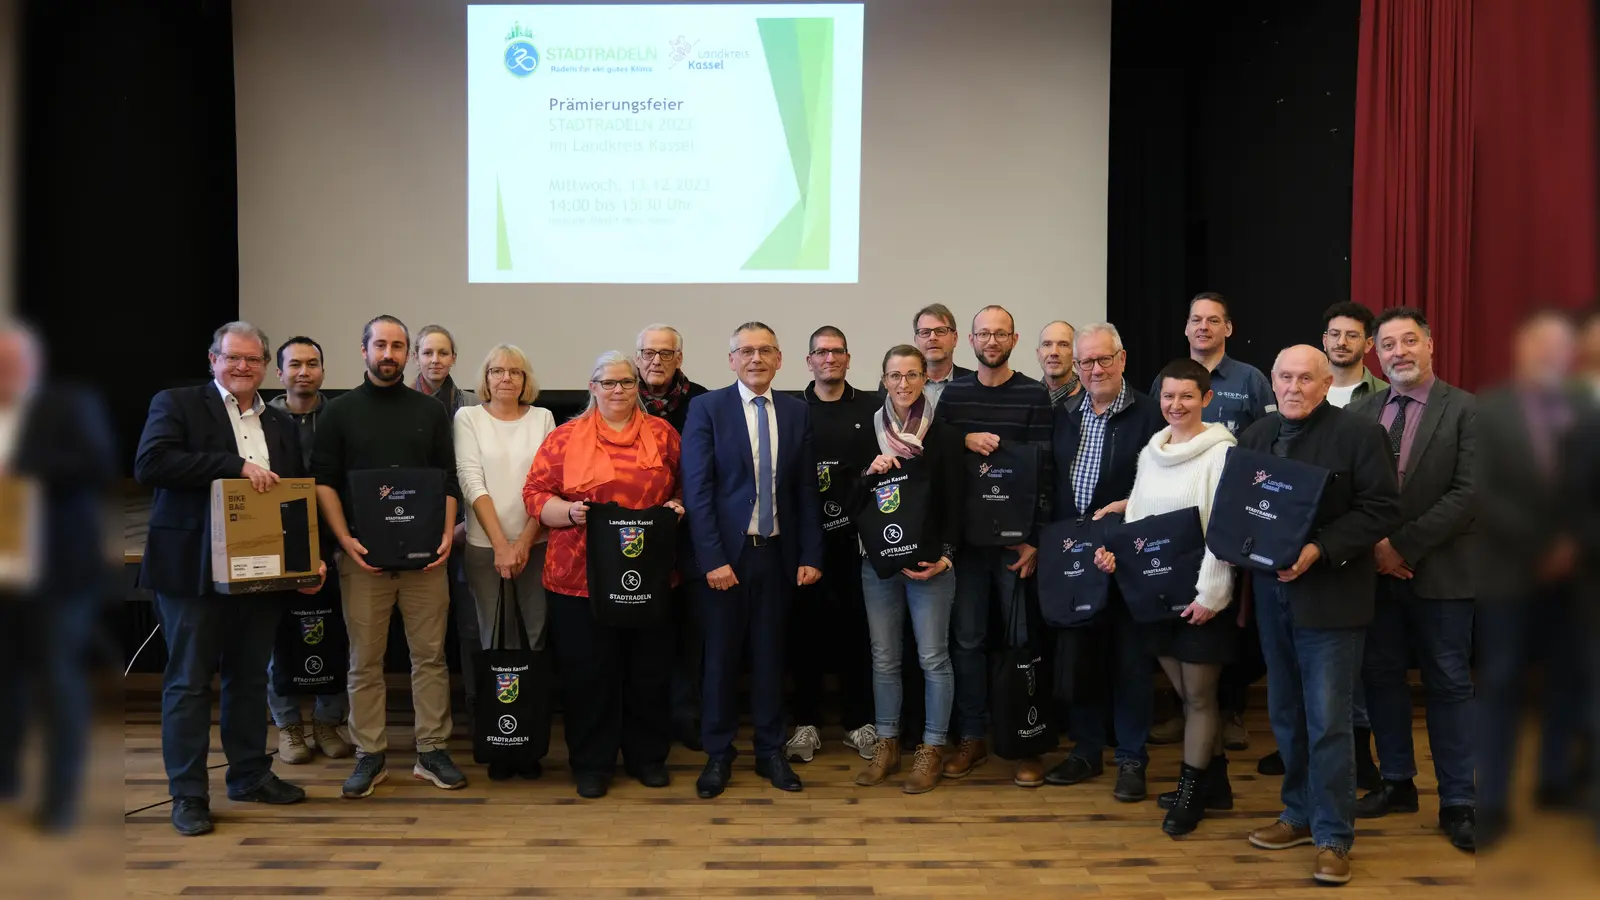 Die Stellvertreterinnen und Stellvertreter teilnehmender Kommunen freuten sich über ihre Auszeichnungen für das diesjährigen Stadtradeln und wollen auch im nächsten Jahr wieder in die Pedale treten.  (Foto: Landkreis Kassel)